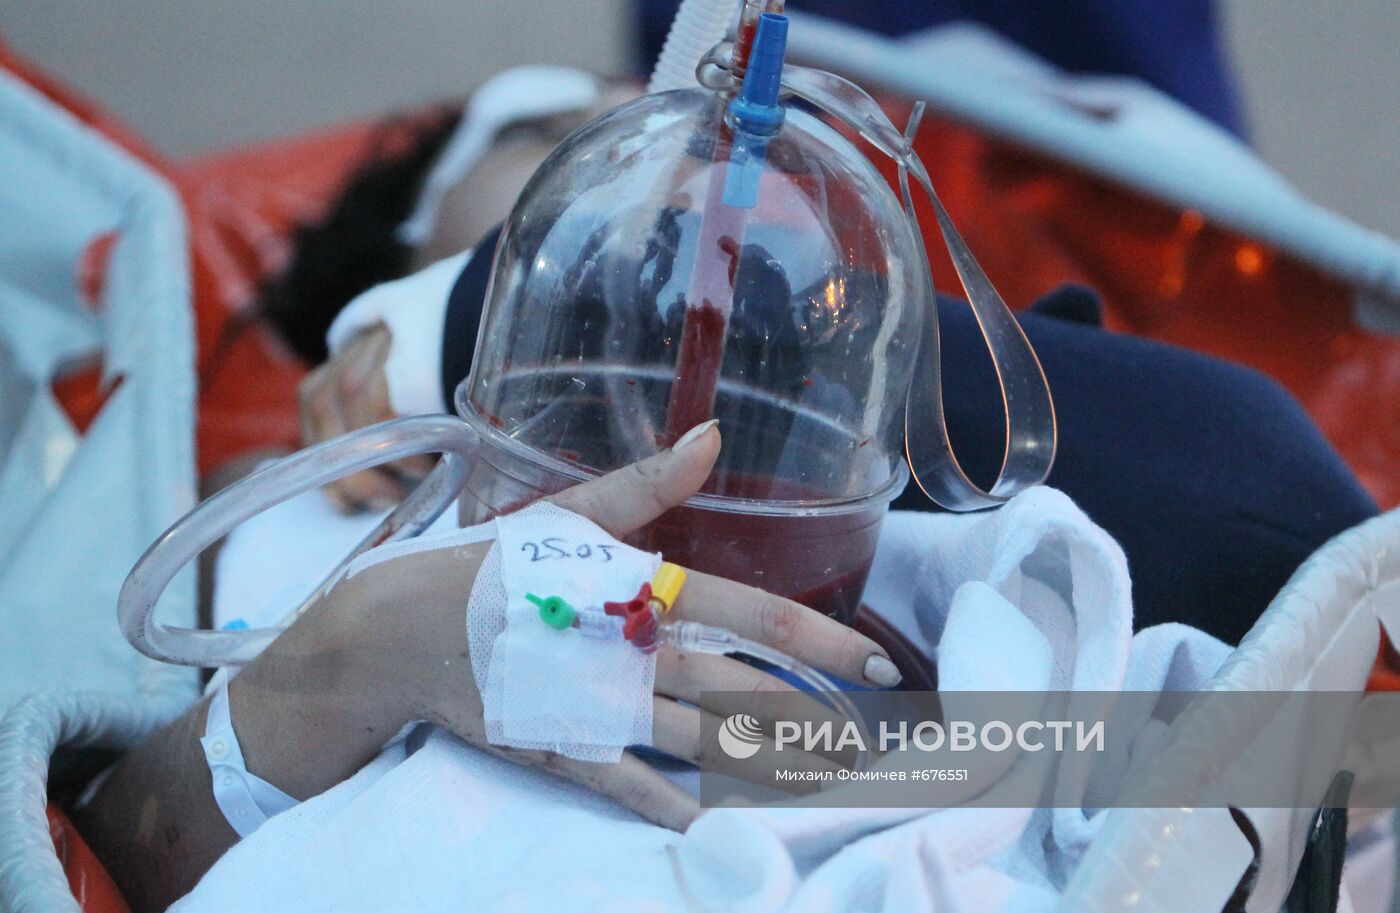 Гражданка России, пострадавшая в результате ДТП в Анталье